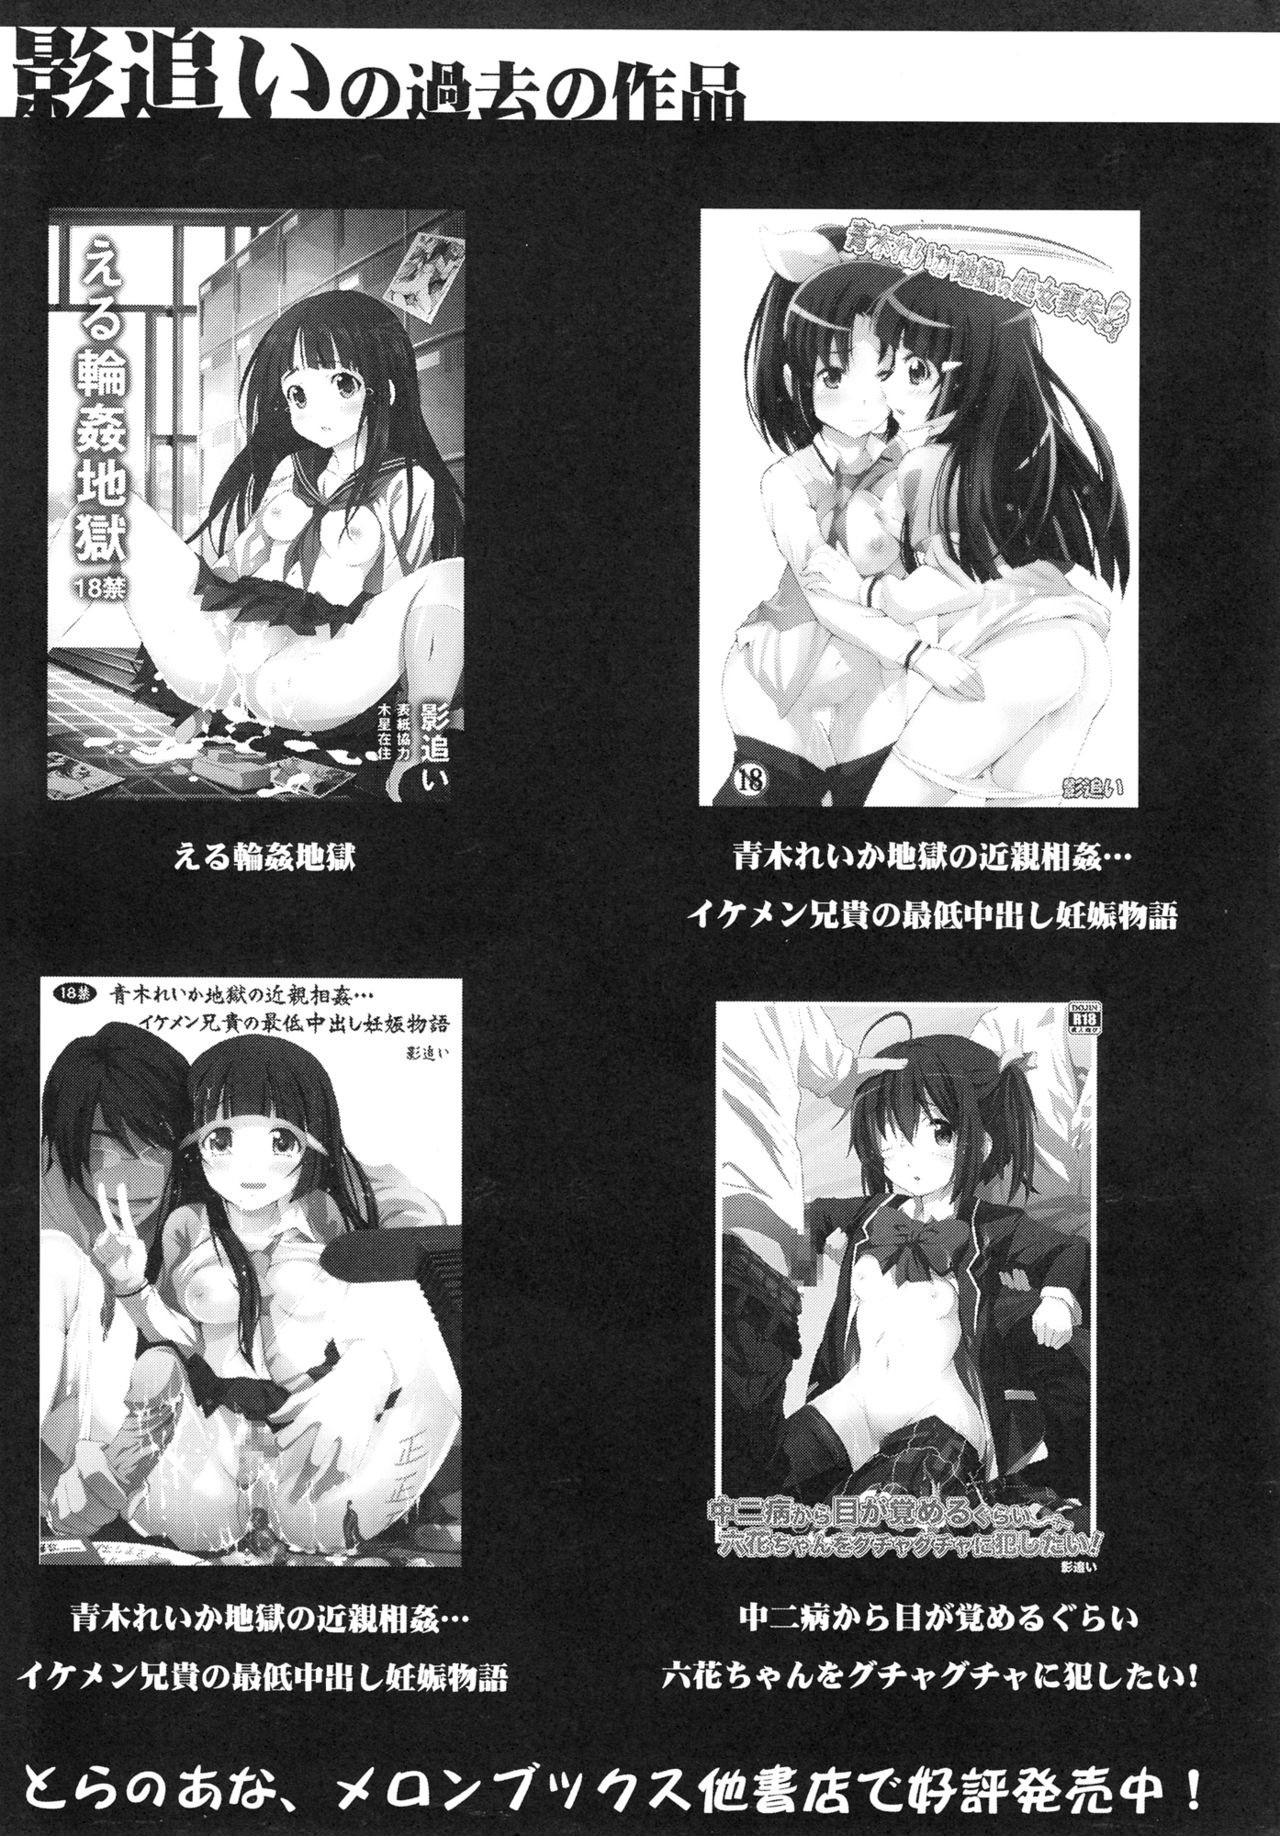 Asuna to Yui no Jigoku Rape hentai manga picture 23